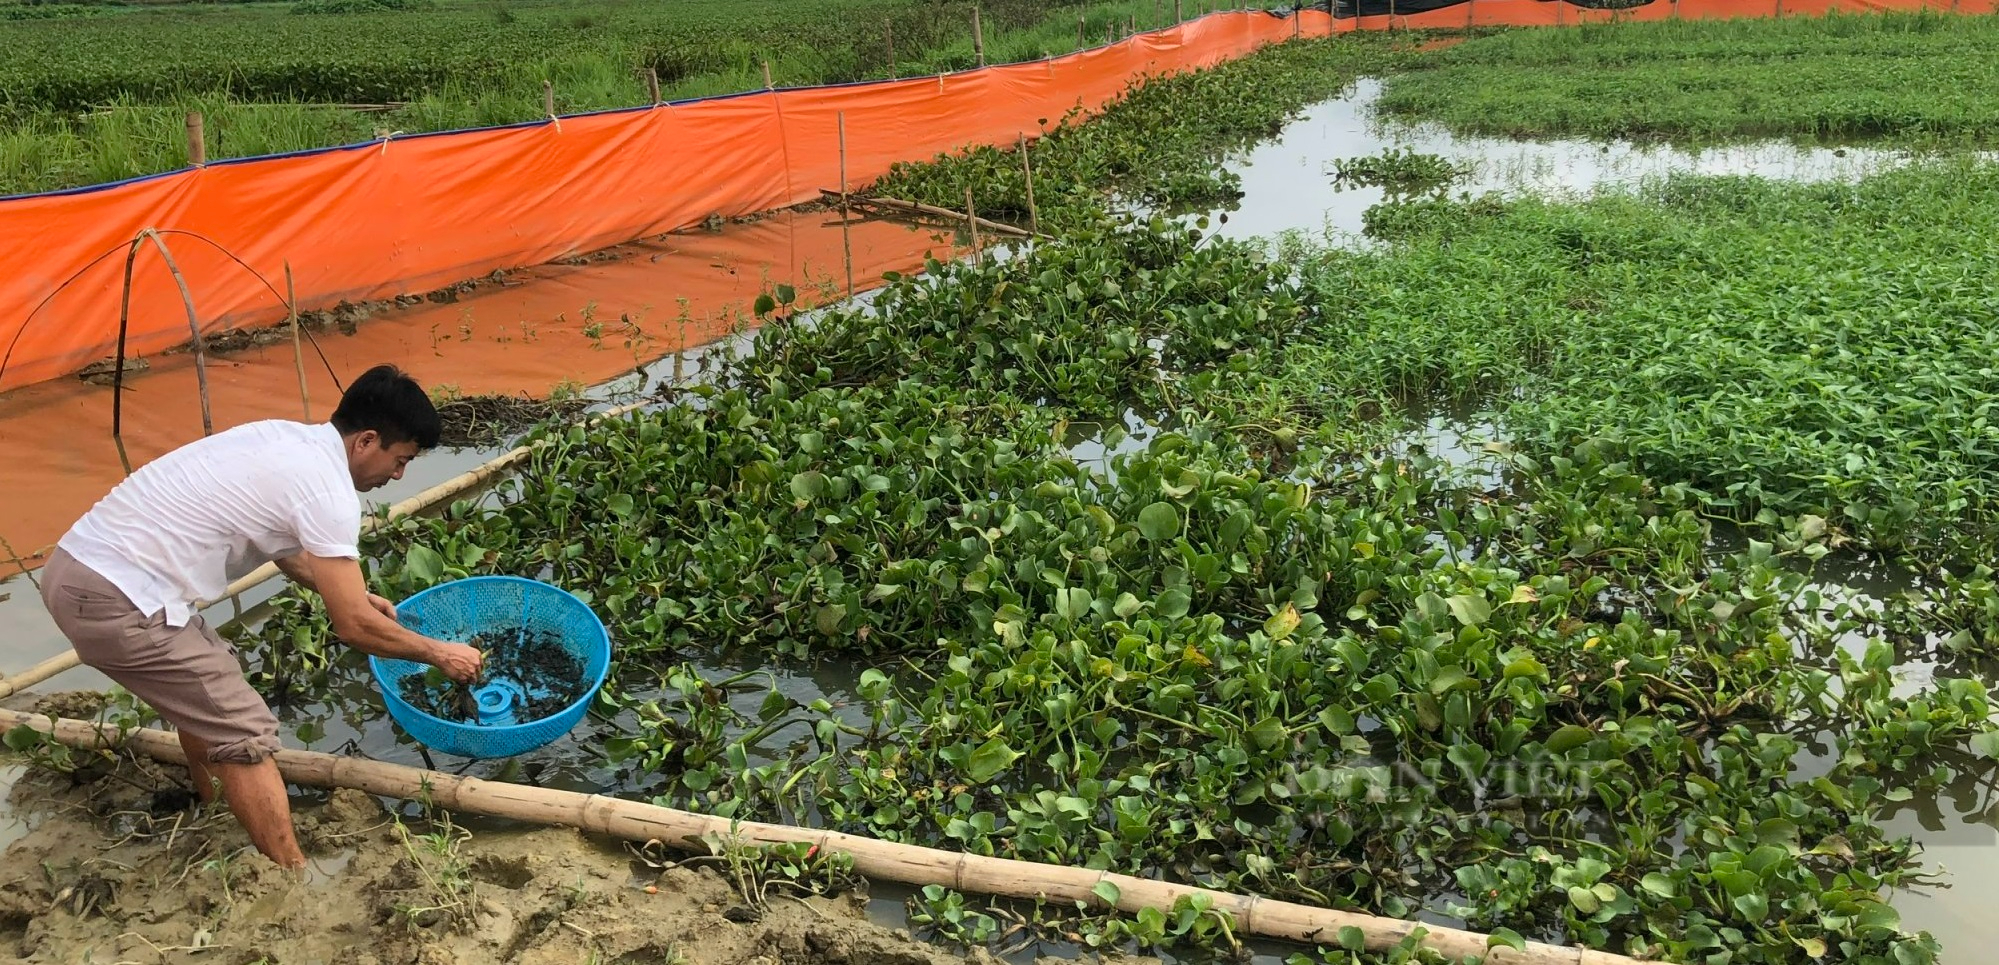 Phú Thọ: Nông dân thu nhập khá nhờ mô hình nuôi cua đồng trong ruộng lúa - Ảnh 1.